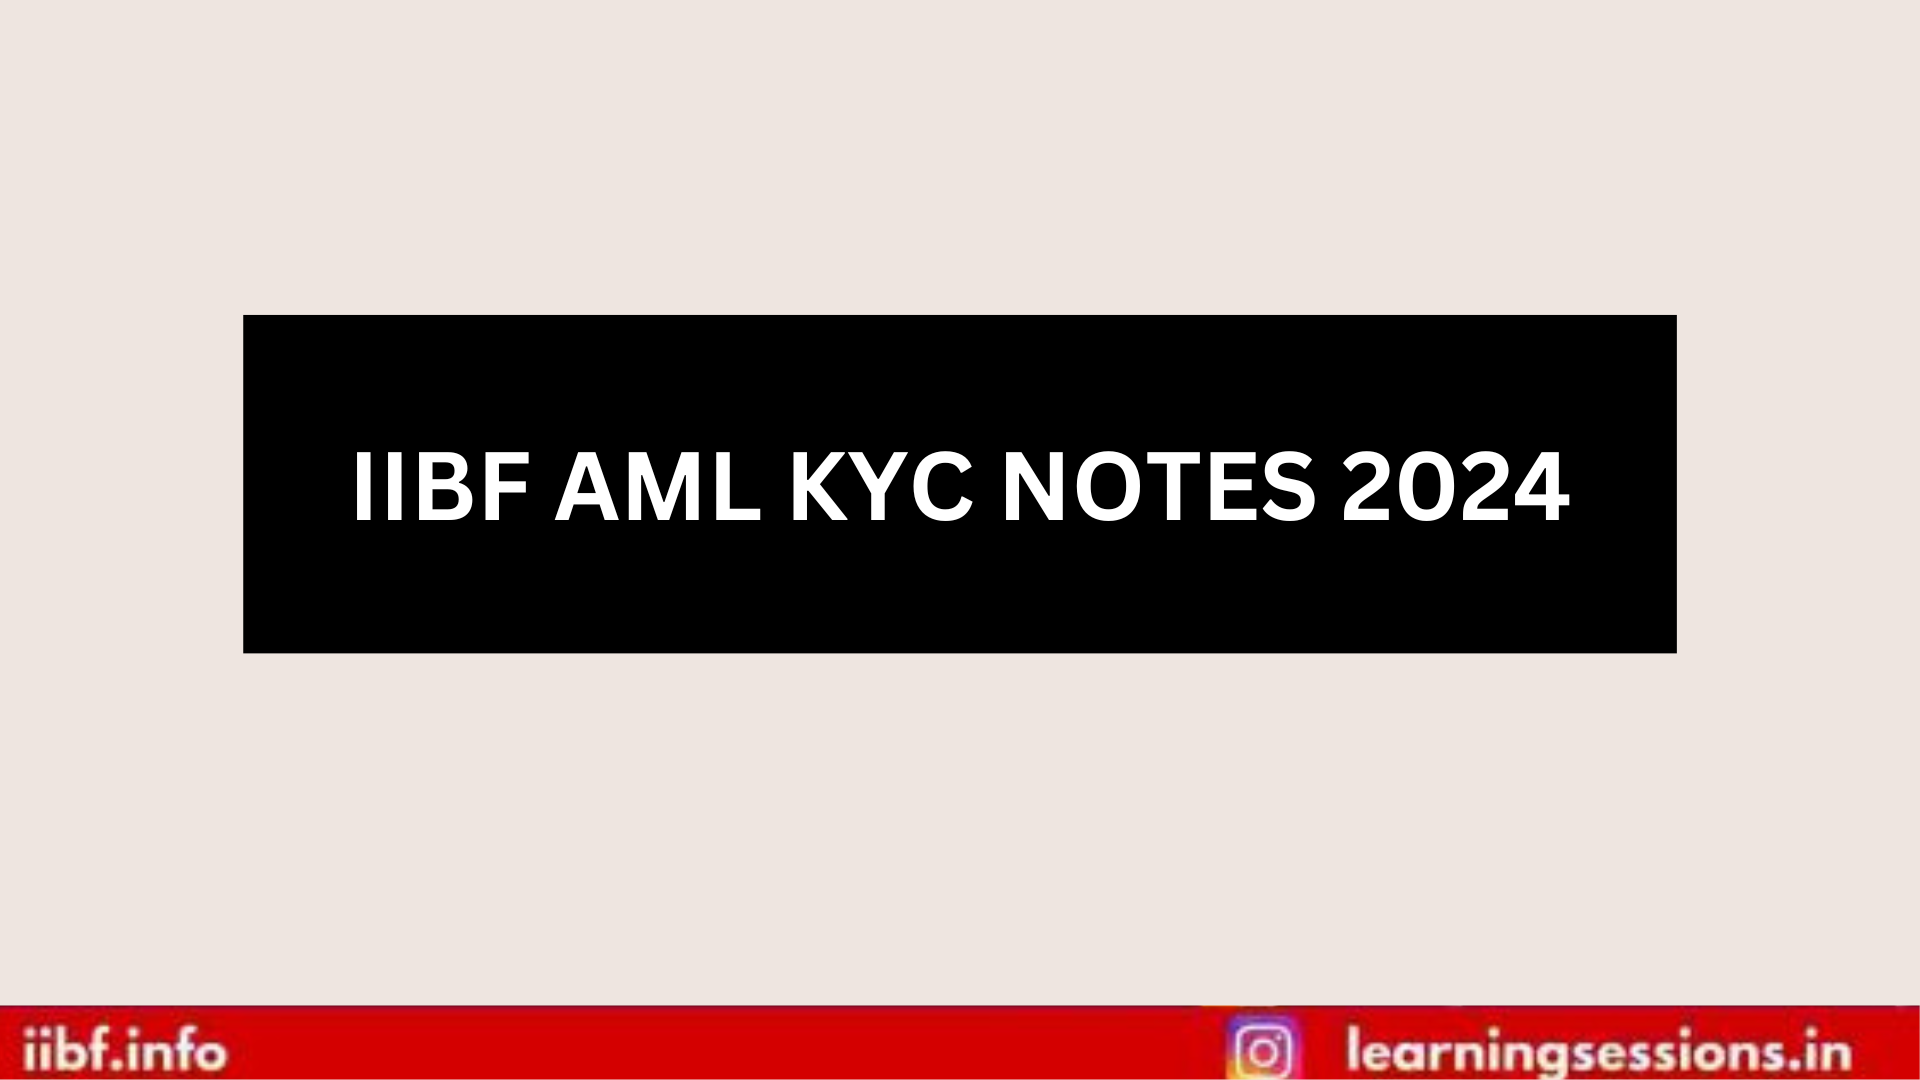 IIBF AML KYC NOTES 2024